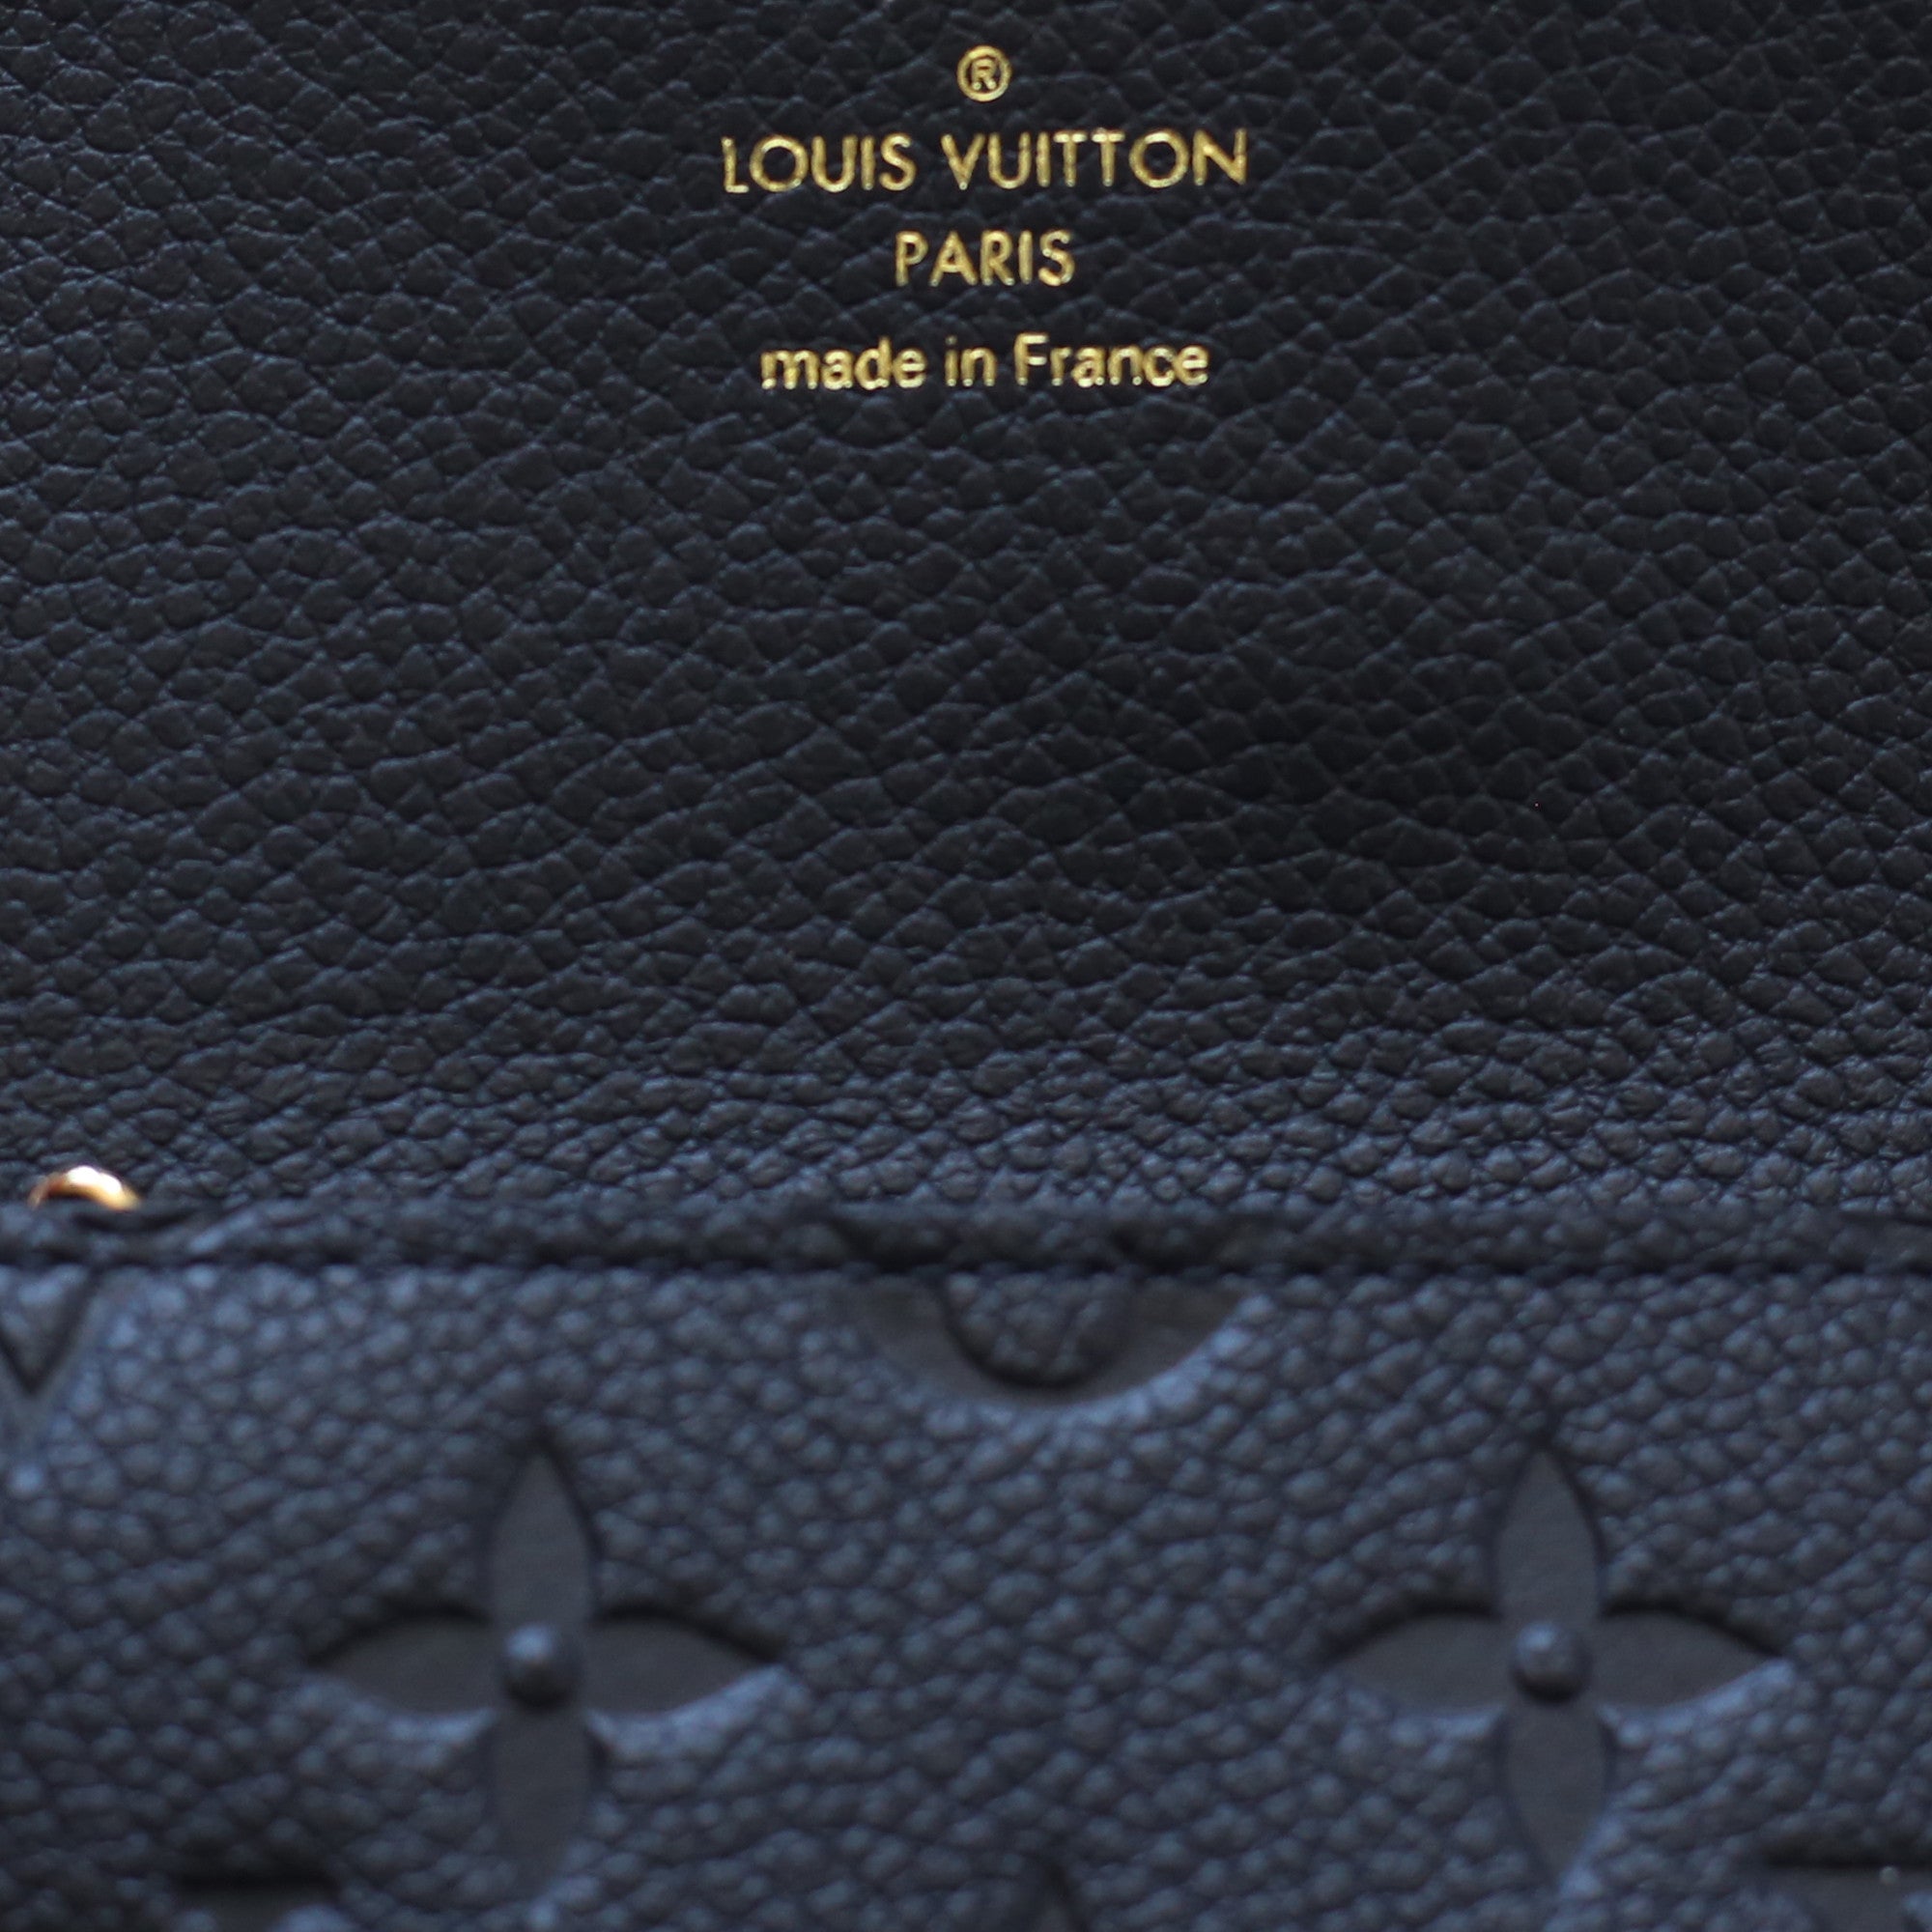 Louis Vuitton Key Pouch Empreinte Leather Wallet Noir